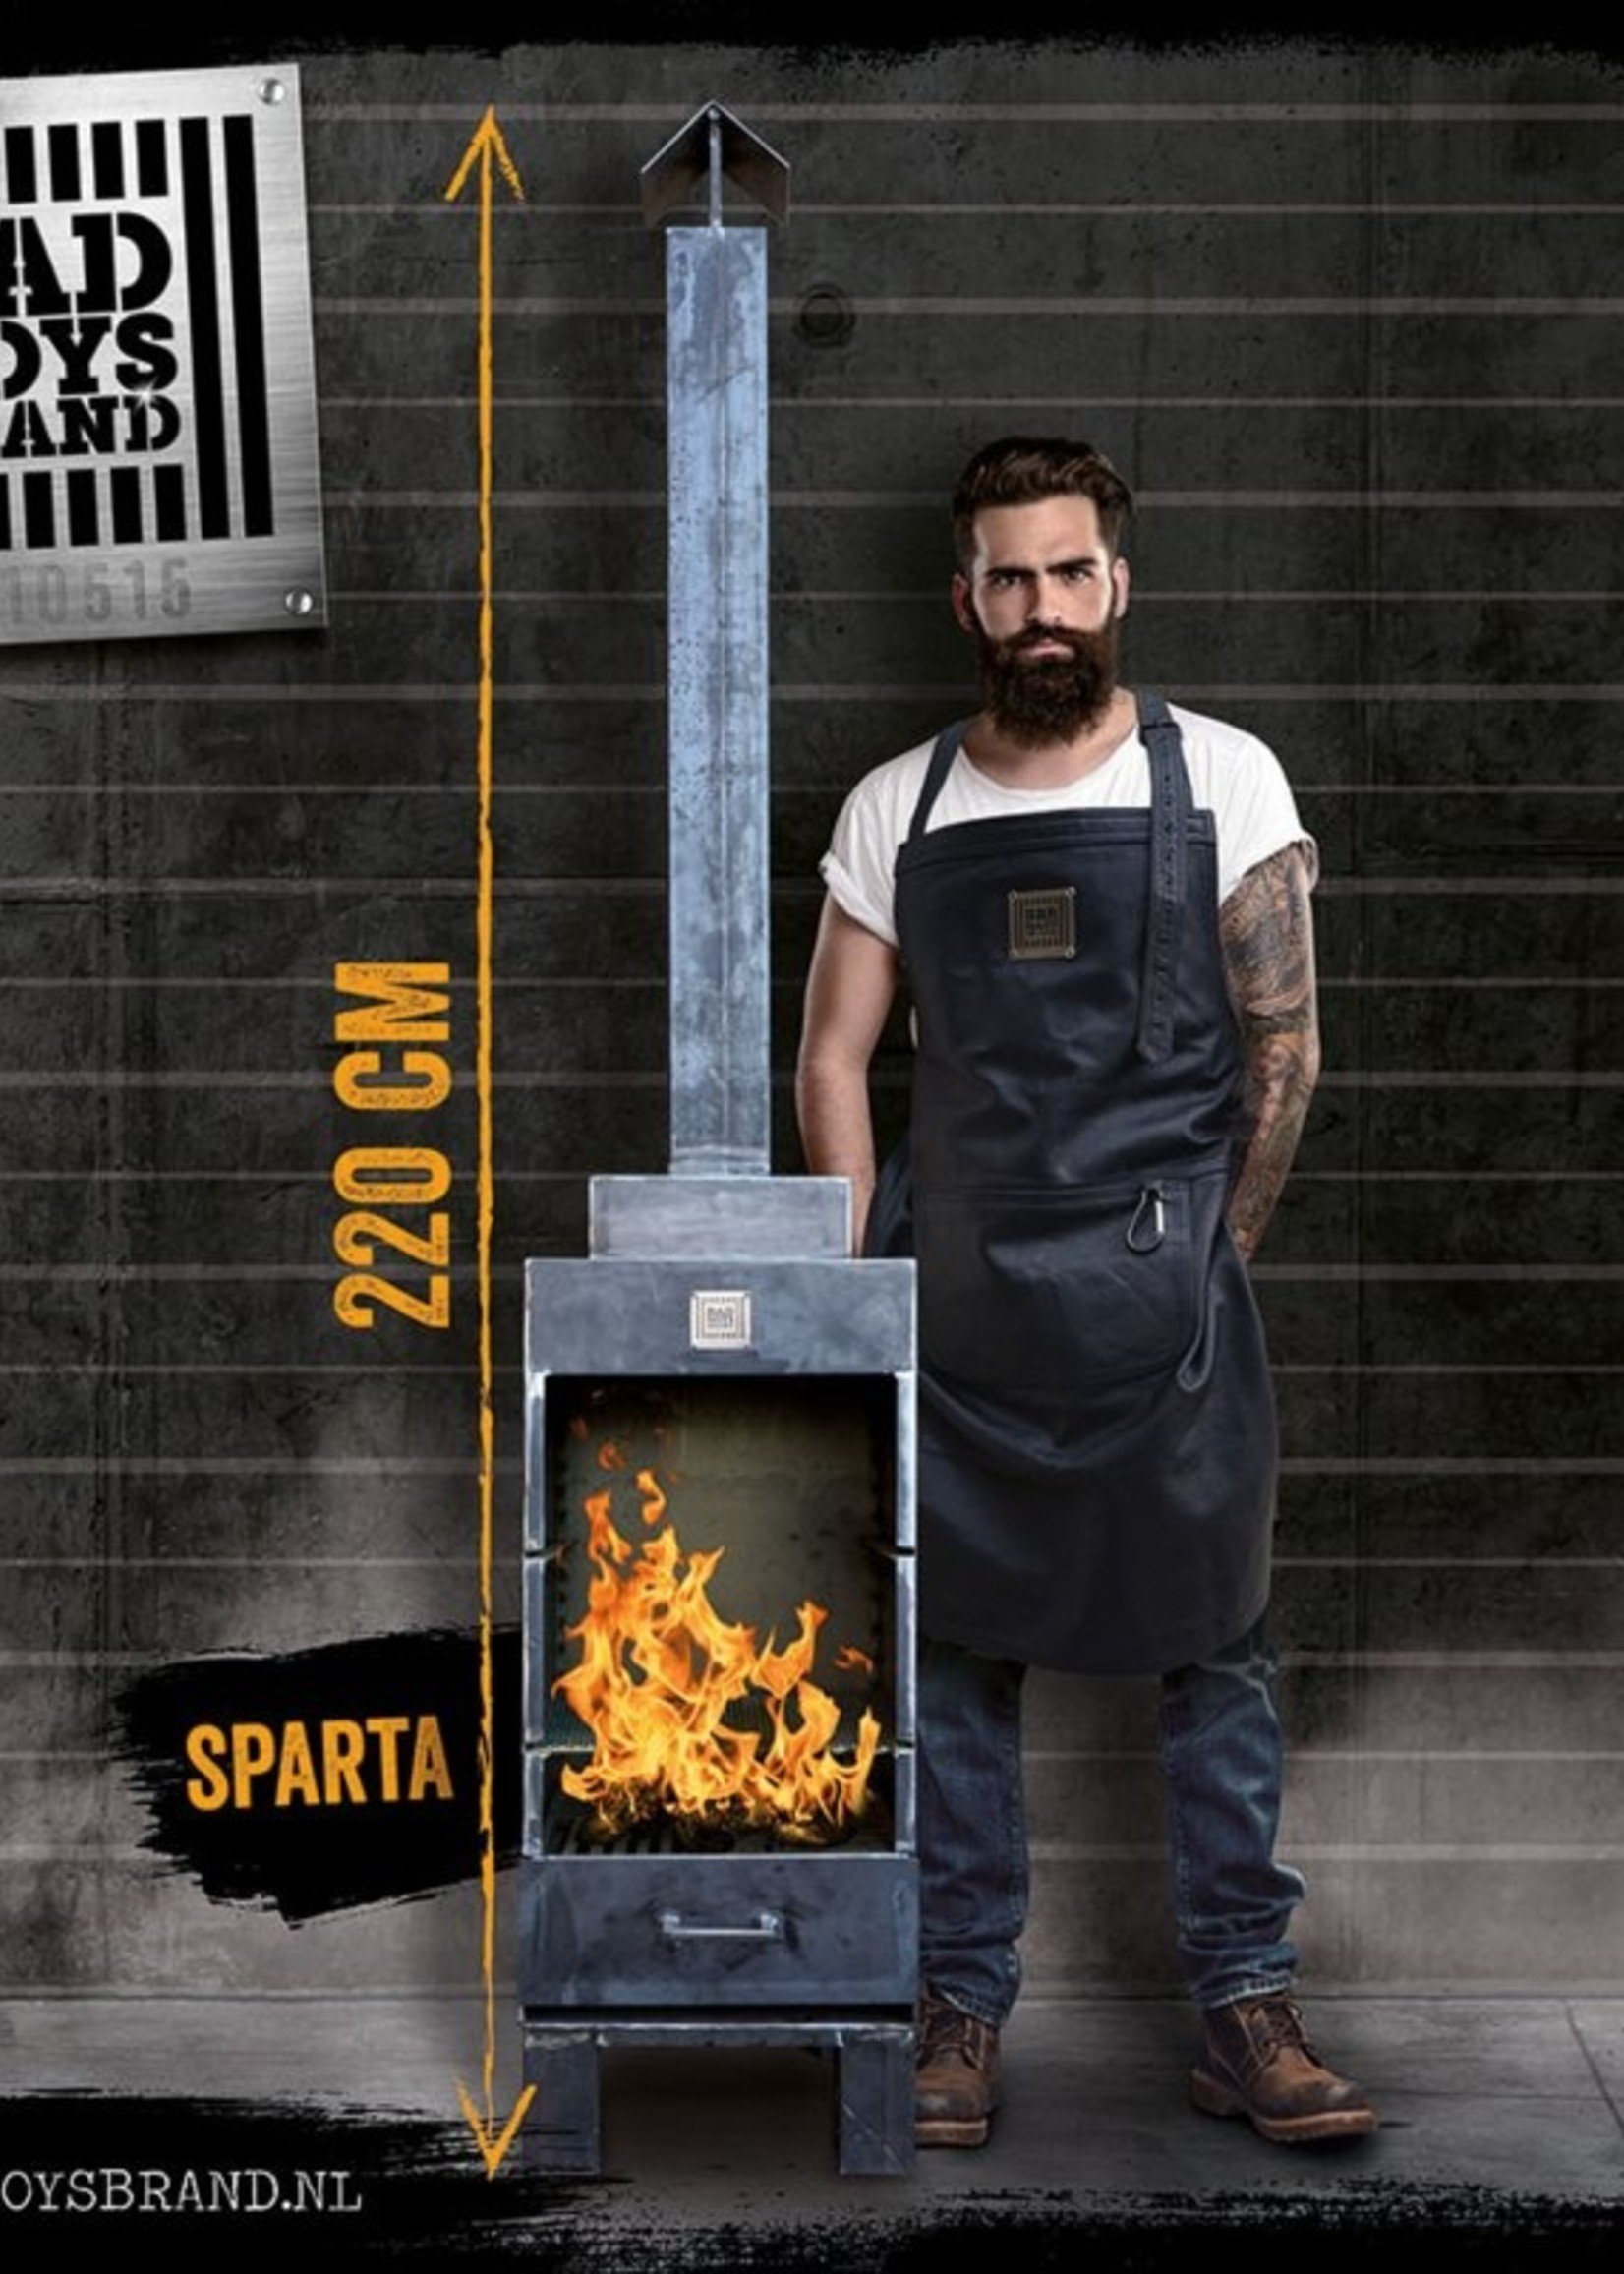 Bad Boys Brand Sparta - Gartenkamin 220 cm - BadBoys Fire - Stahl - 100% Made in Jail